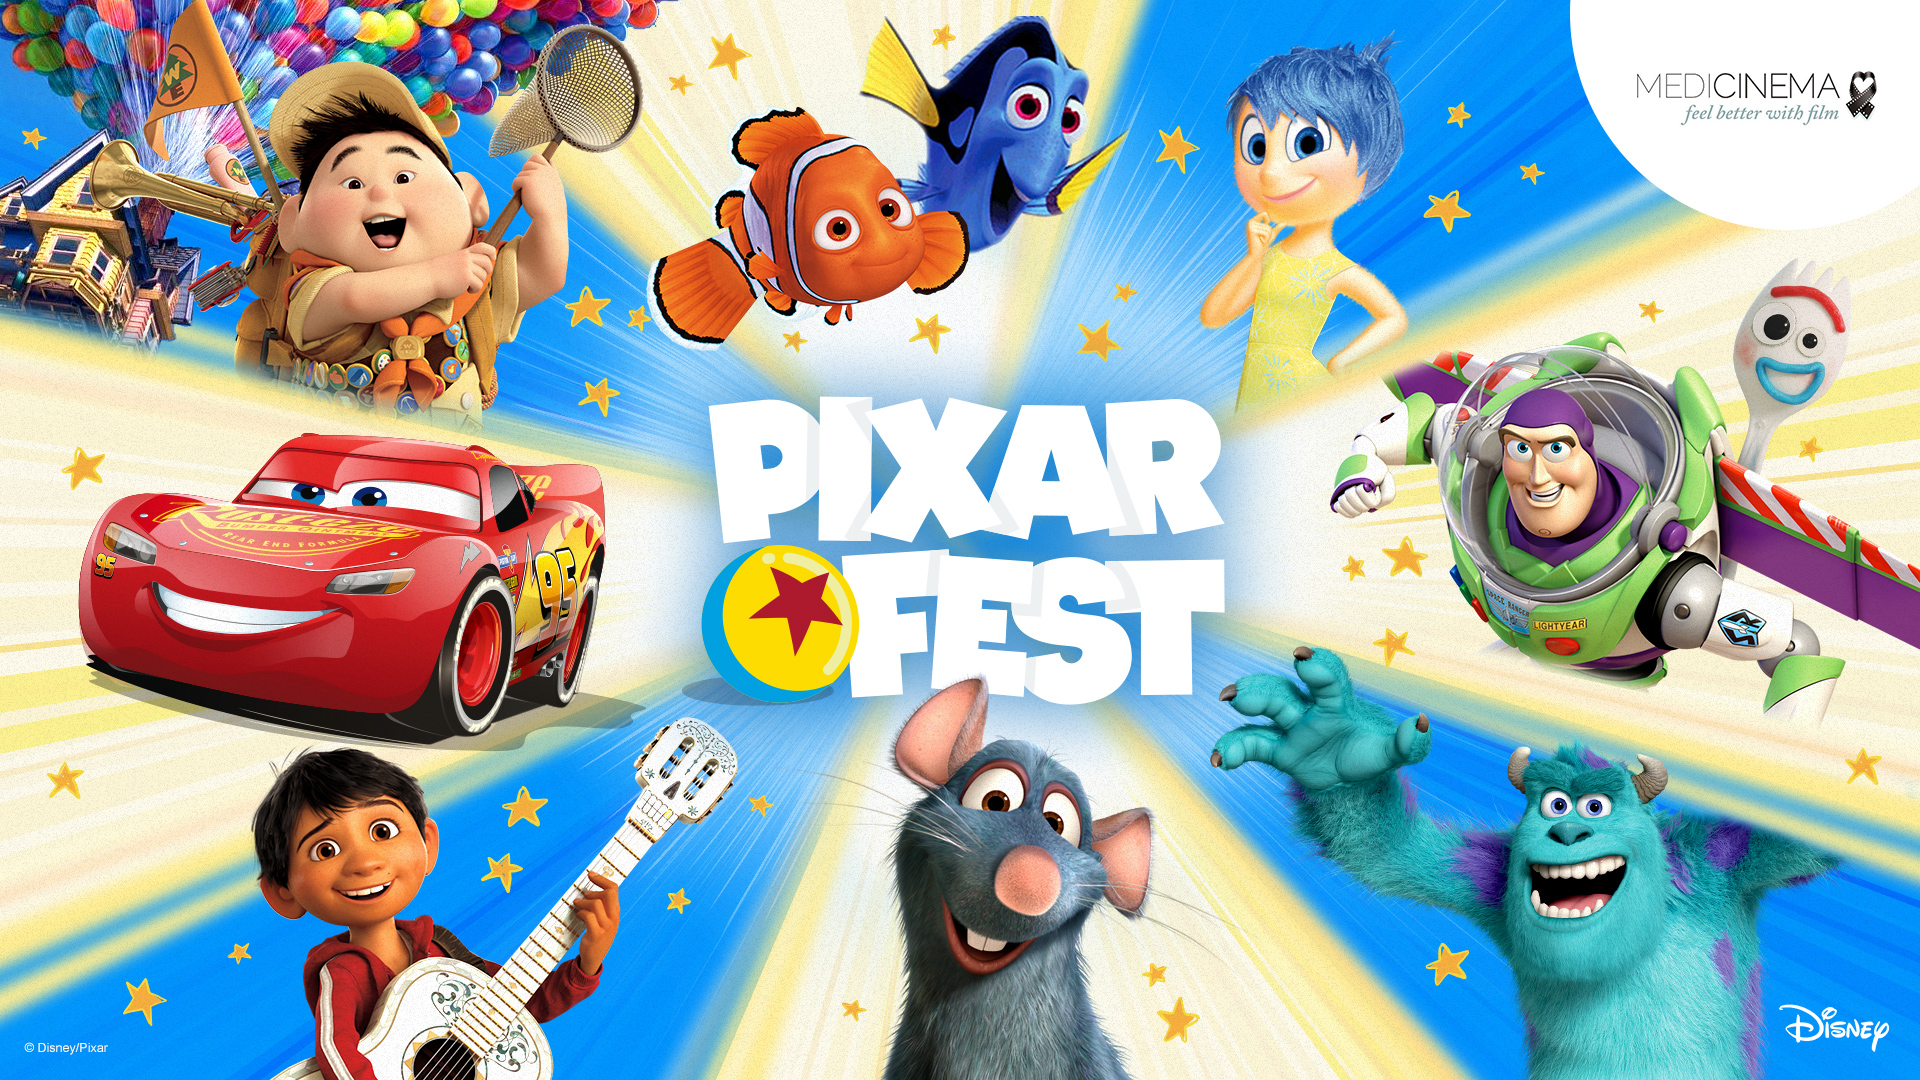 Disney Pixar Fest 2020